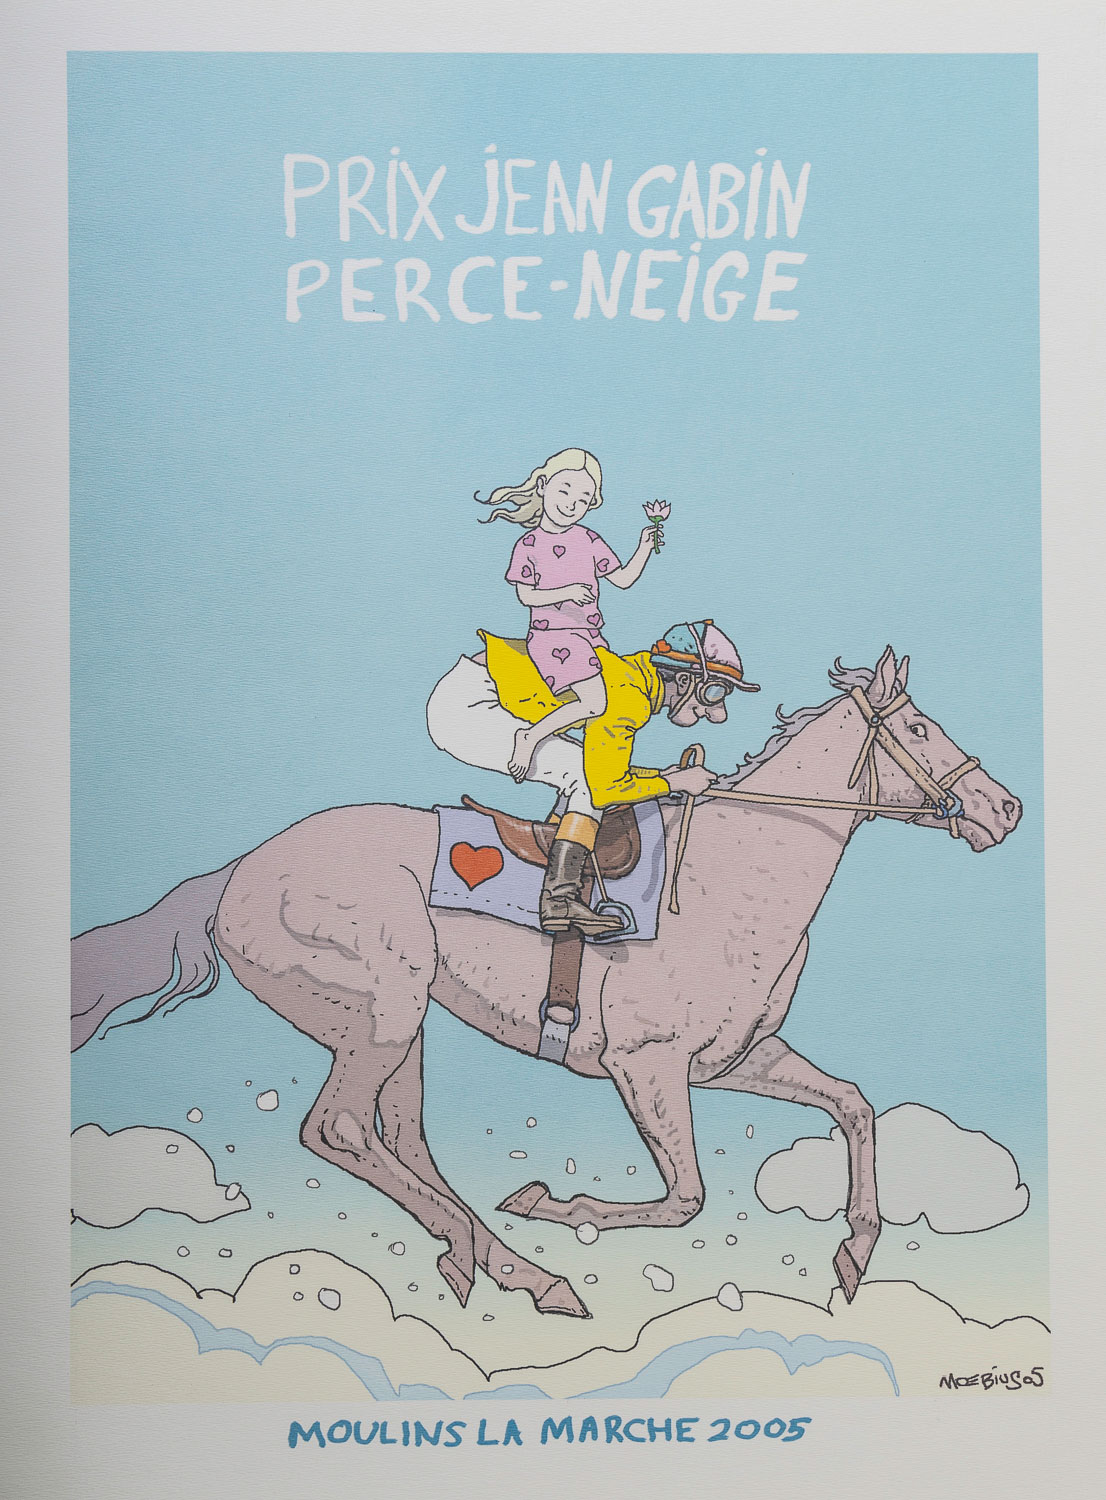 Stampa Jean Giraud, Moebius : Prix Jean Gabin Perce Neige